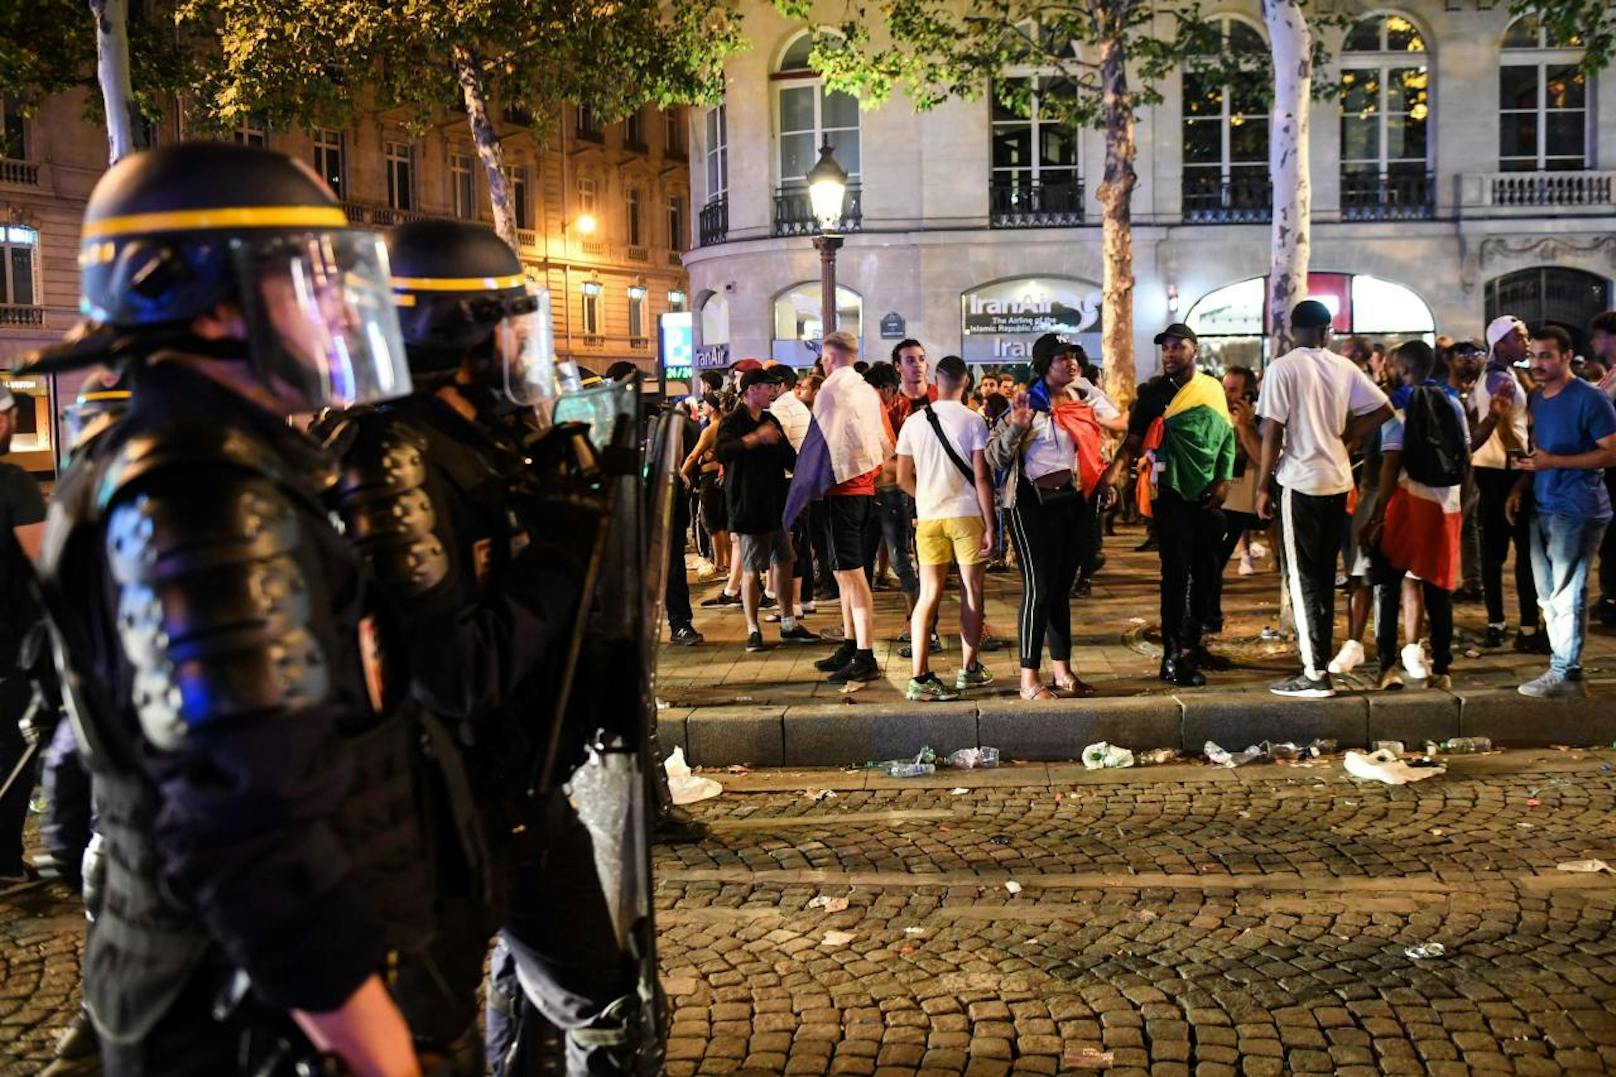 Nach dem Sieg im WM-Finale feierten in Frankreich die Fans auf den Straßen. Dabei kam es auch zu Ausschreitungen. Die Polizei rückte mit Wasserwerfern an. Es gab mehrere Verletzte und sogar Tote.